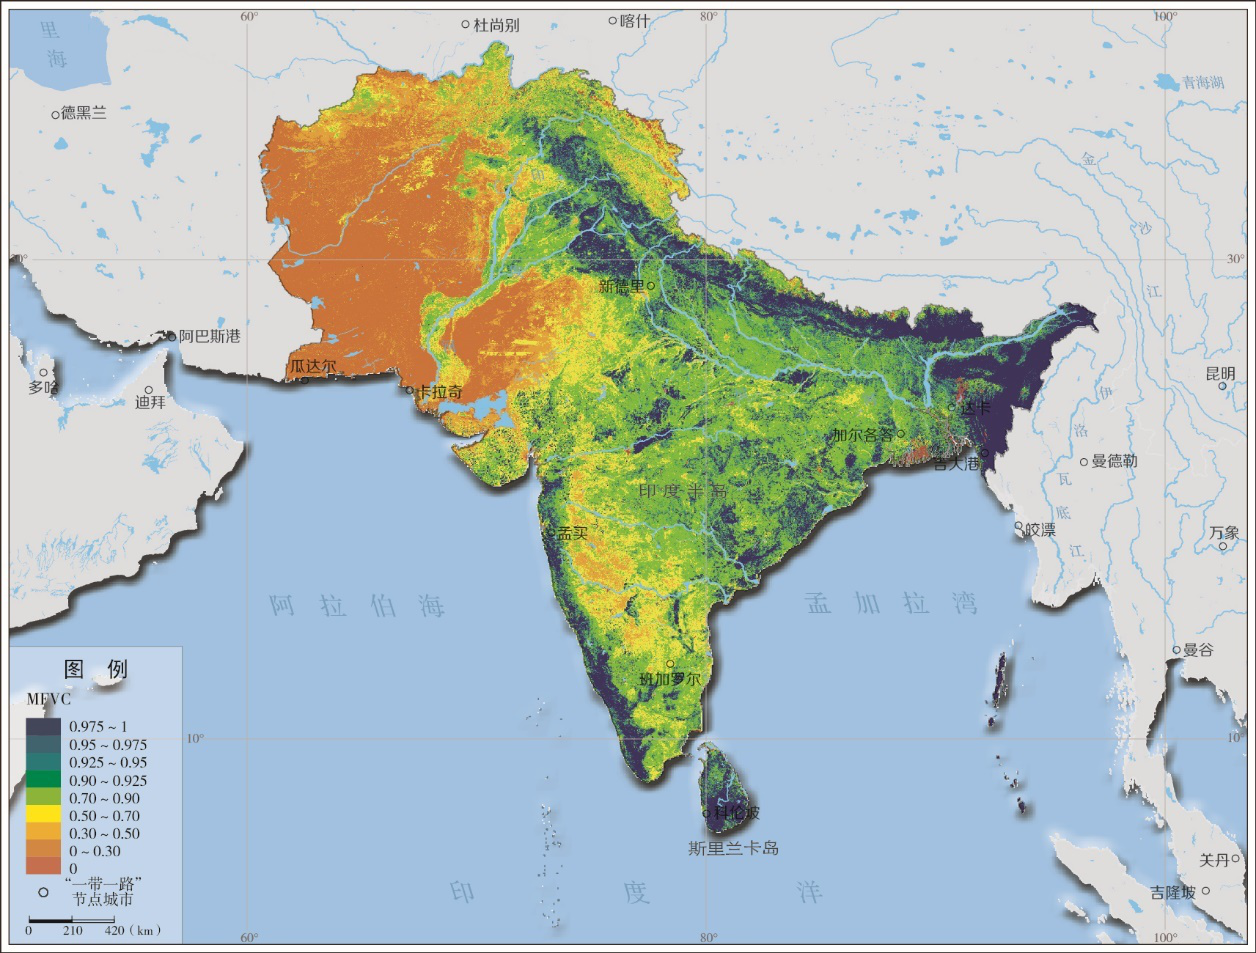 2015年南亚区年最大植被覆盖度分布